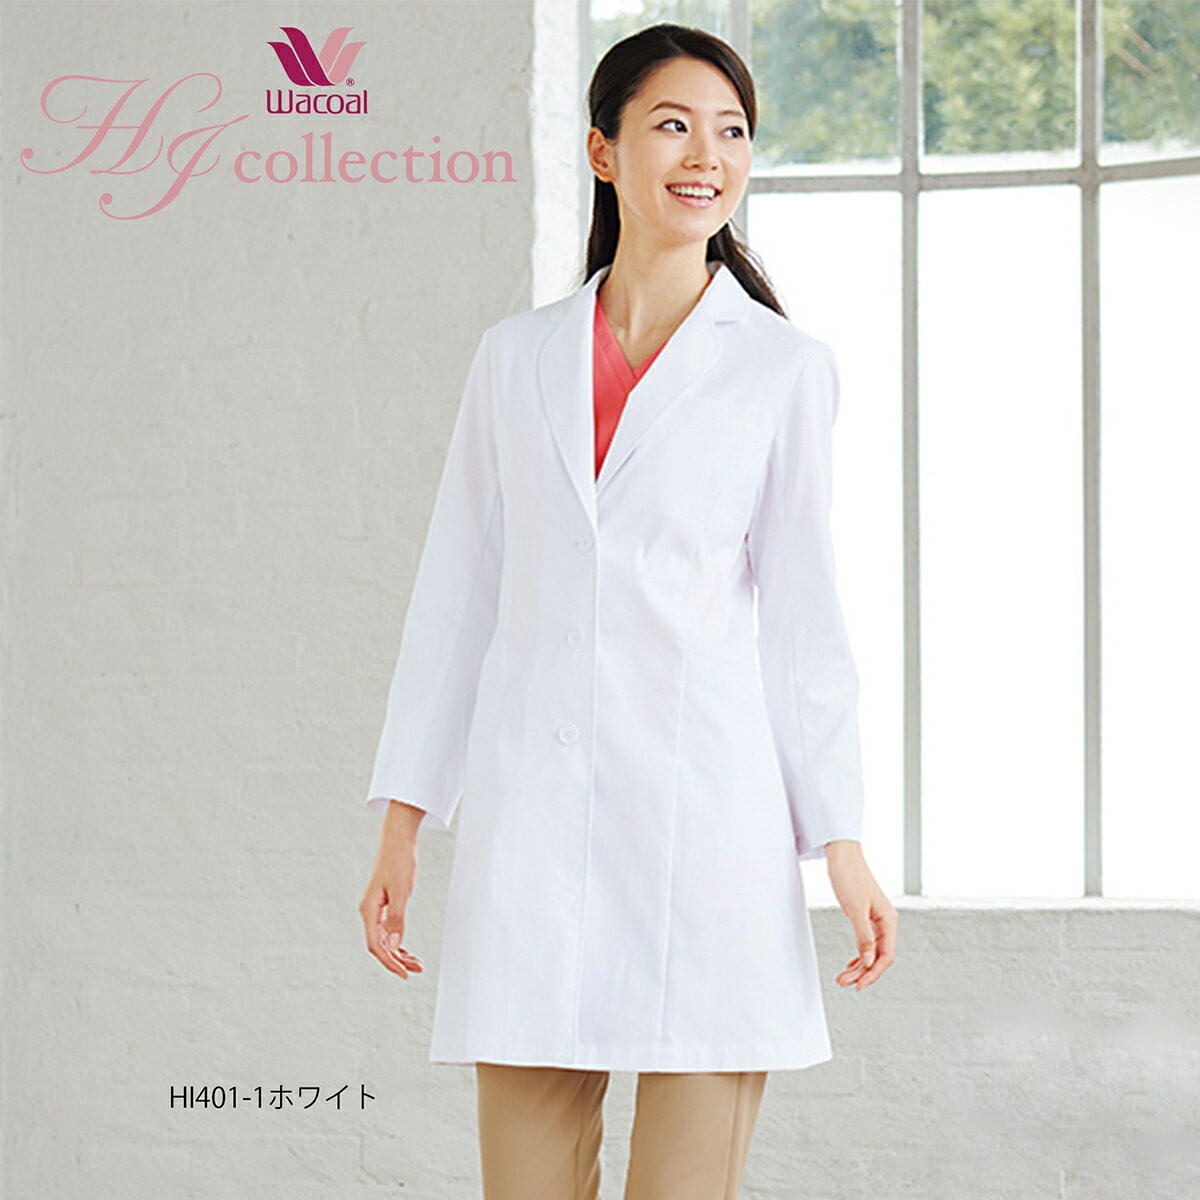 白衣 ドクターコート フォーク レディースコート ホワイト HI401-1 女性 診察衣 白